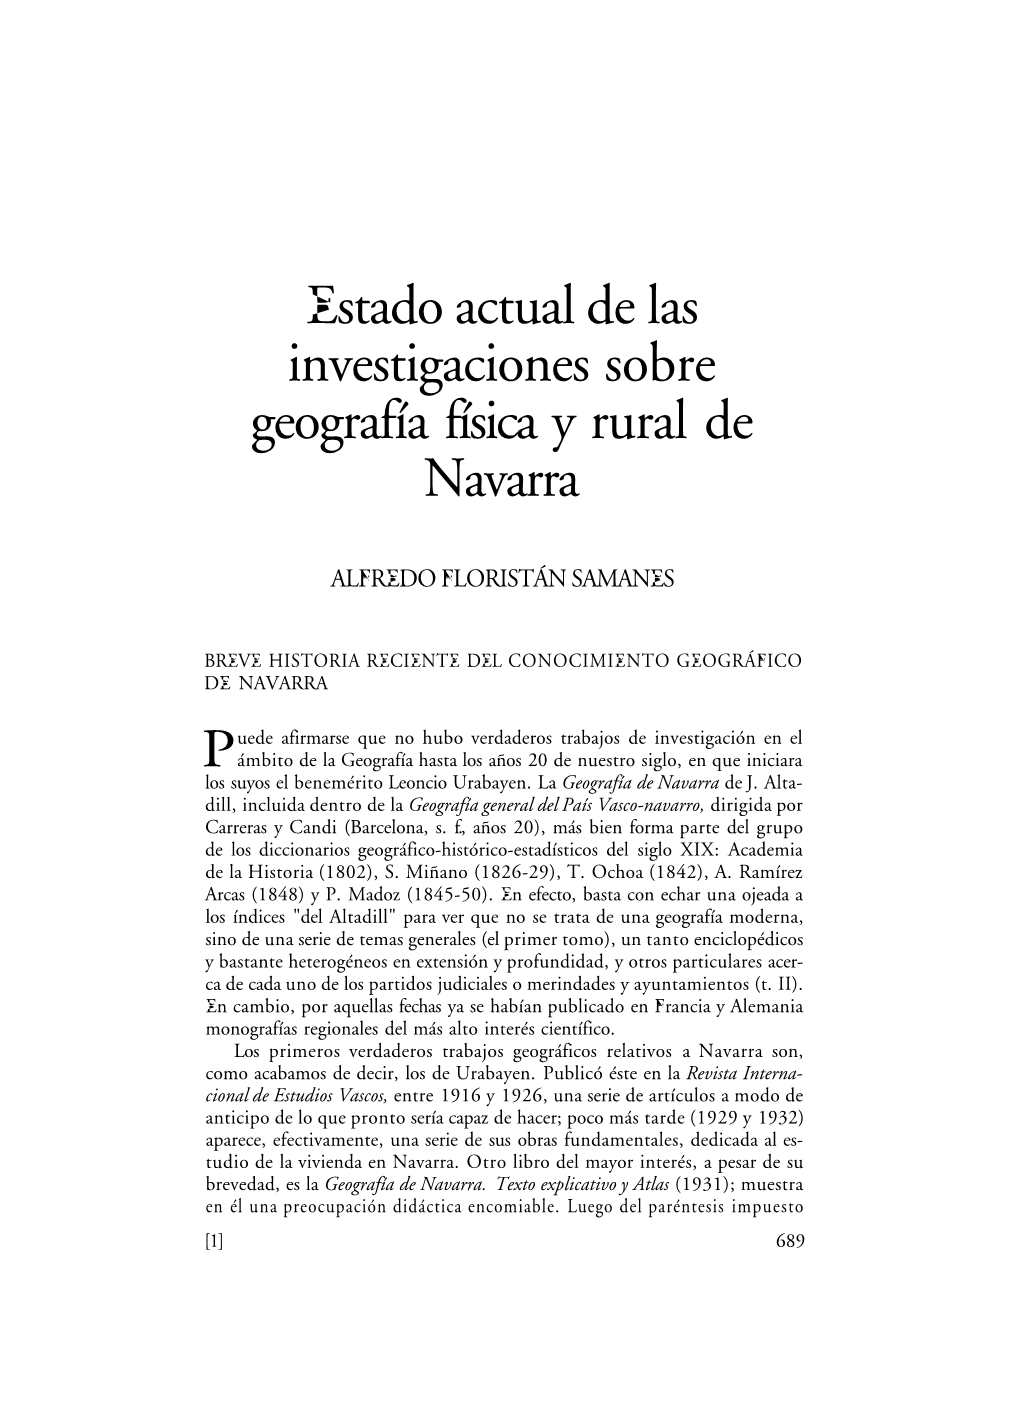 Estado Actual De Las Investigaciones Sobre Geografía Física Y Rural De Navarra